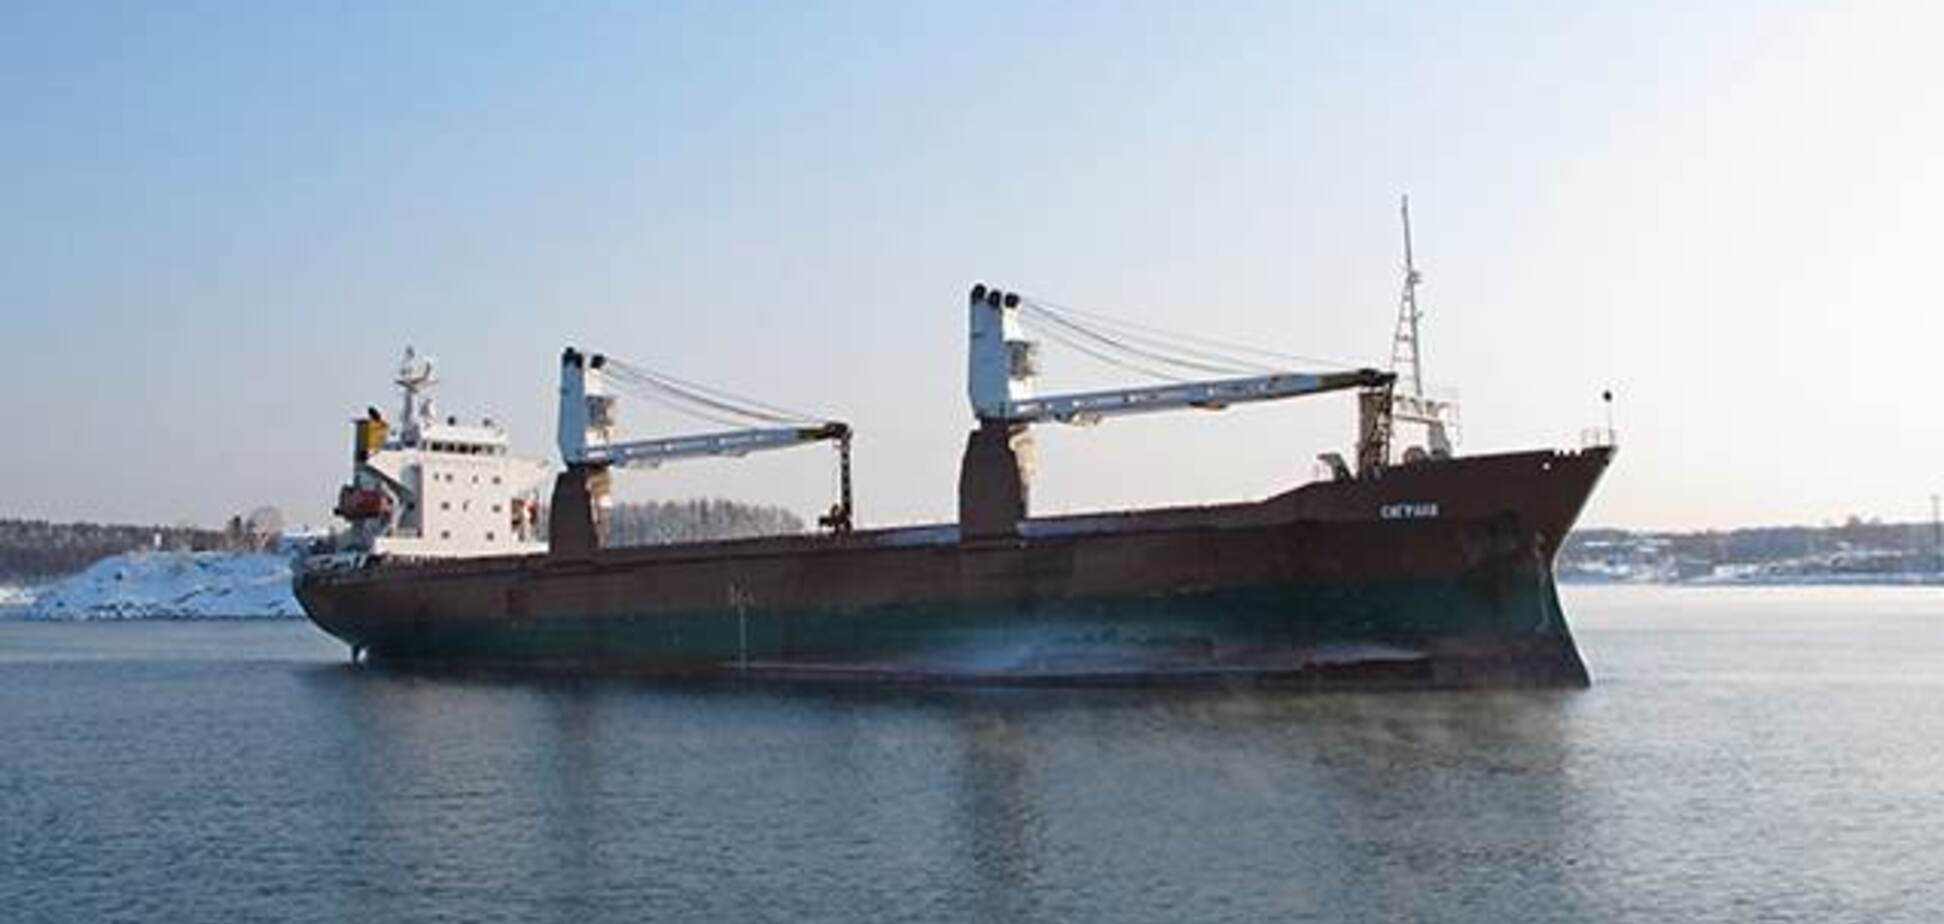 Следующий - Крымский? Российское судно протаранило мост в Южной Корее. Видеофакт